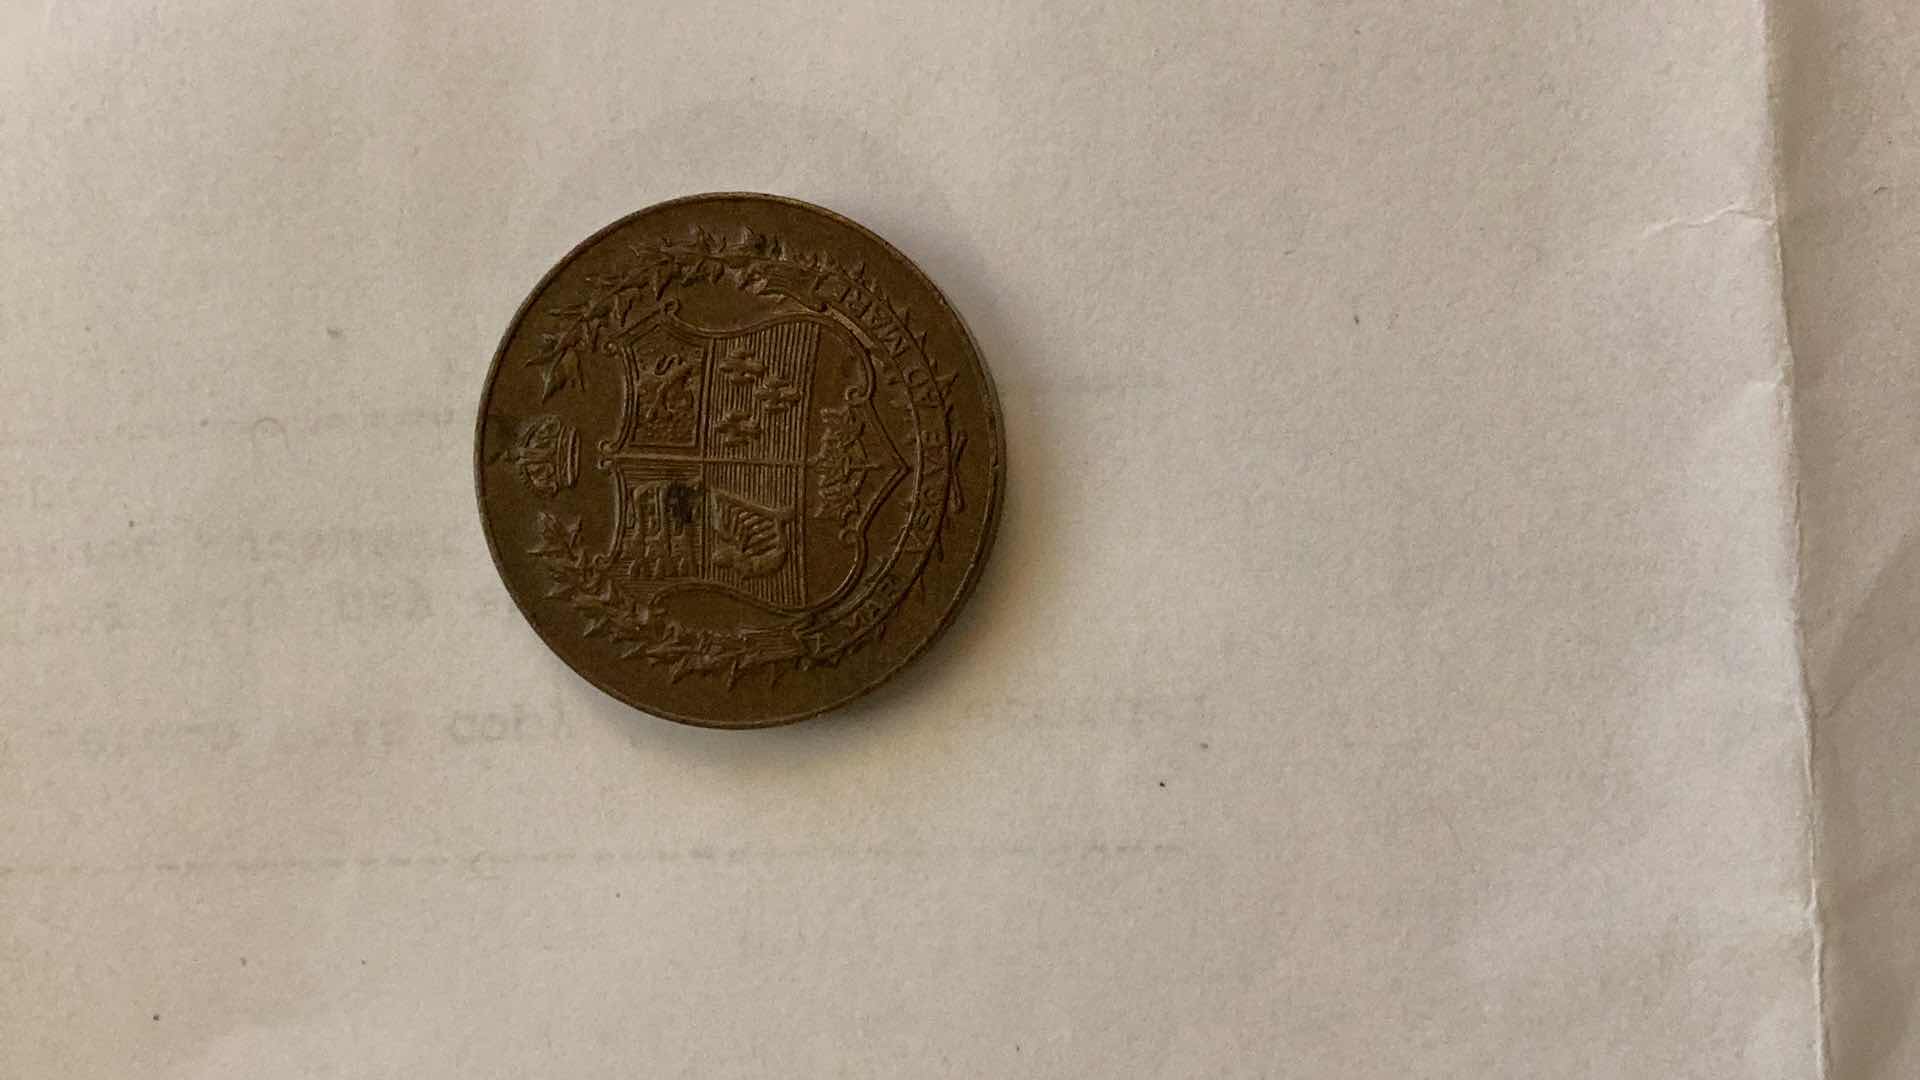 Photo 2 of CANADA 1867-1927 CONFEDERATION COMMEMORATIVE COIN